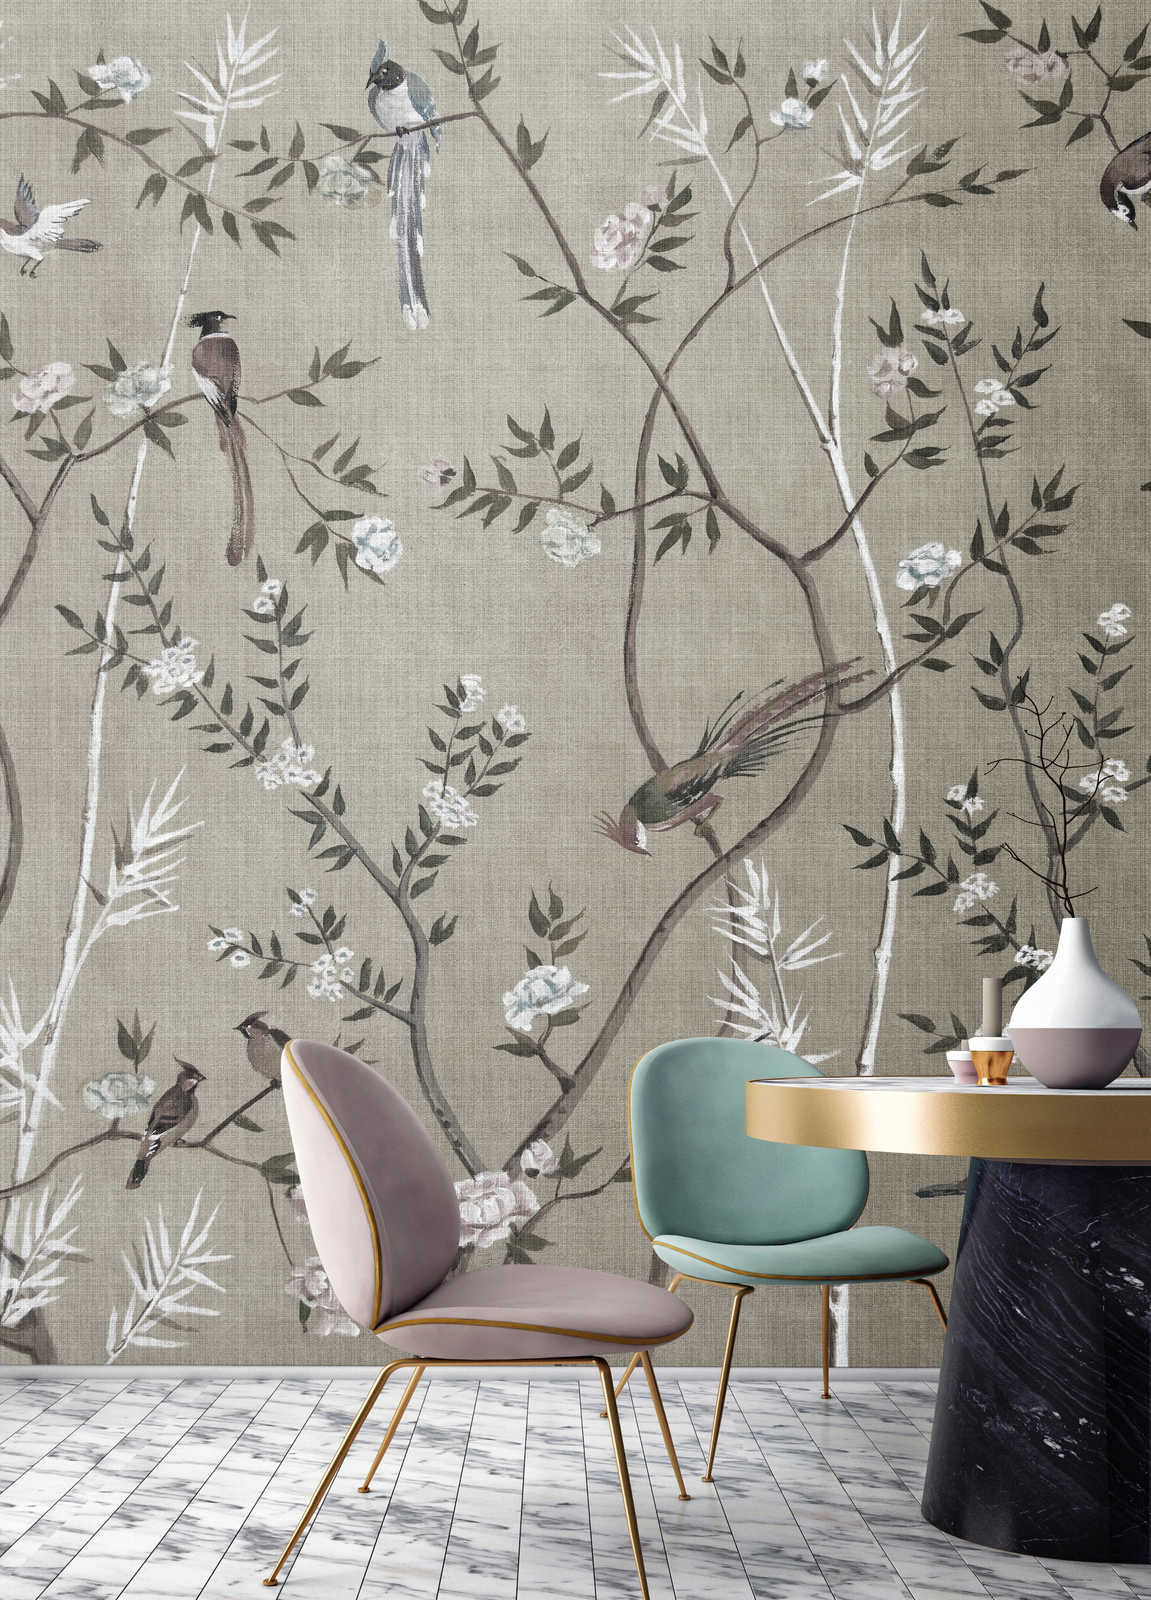             Tea Room 2 - Papel pintado Diseño de pájaros y flores en color gris
        